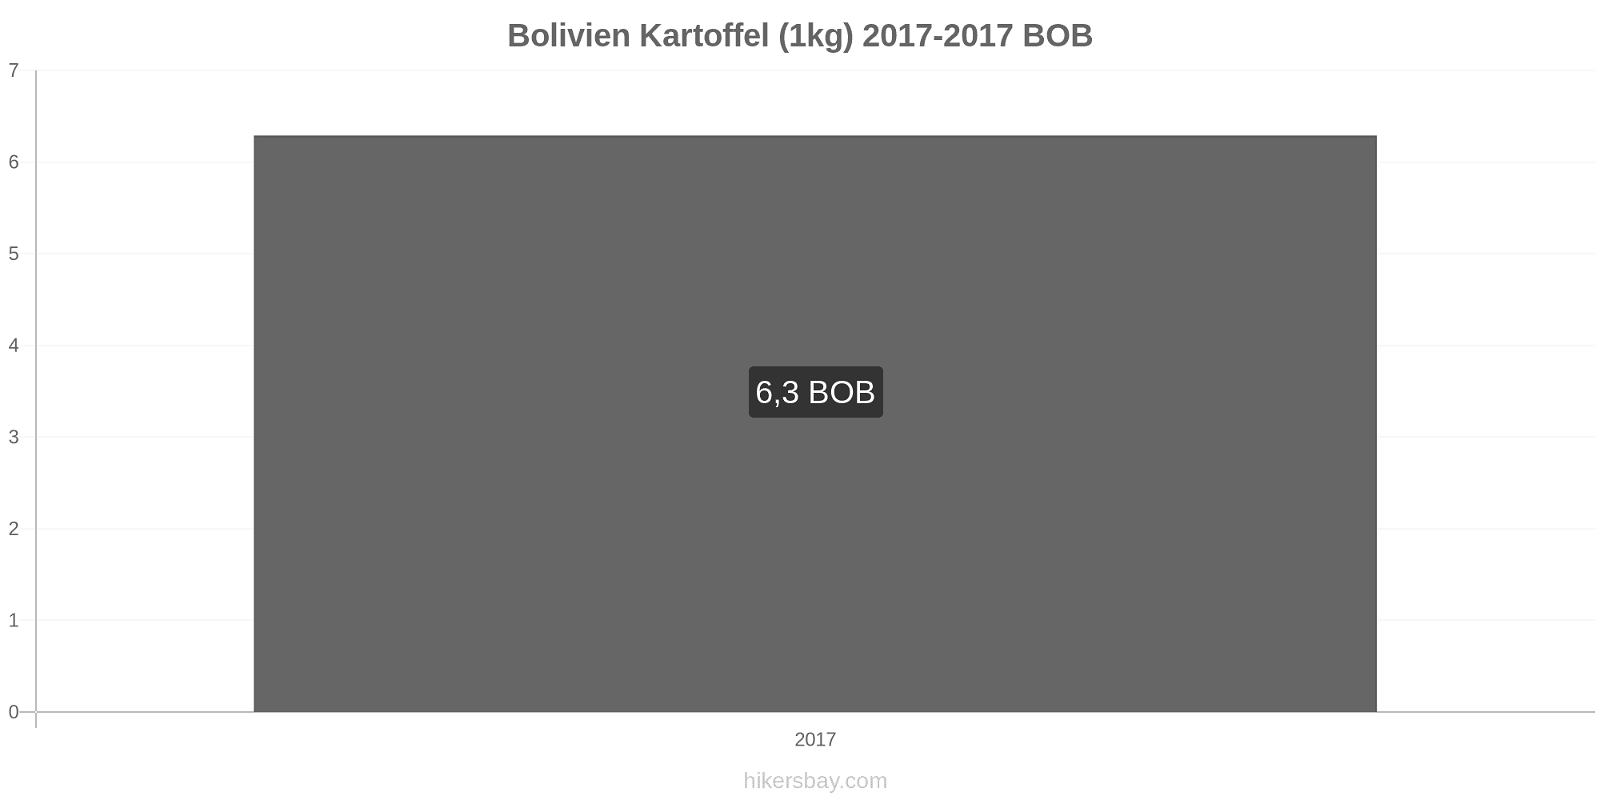 Bolivien Preisänderungen Kartoffeln (1kg) hikersbay.com